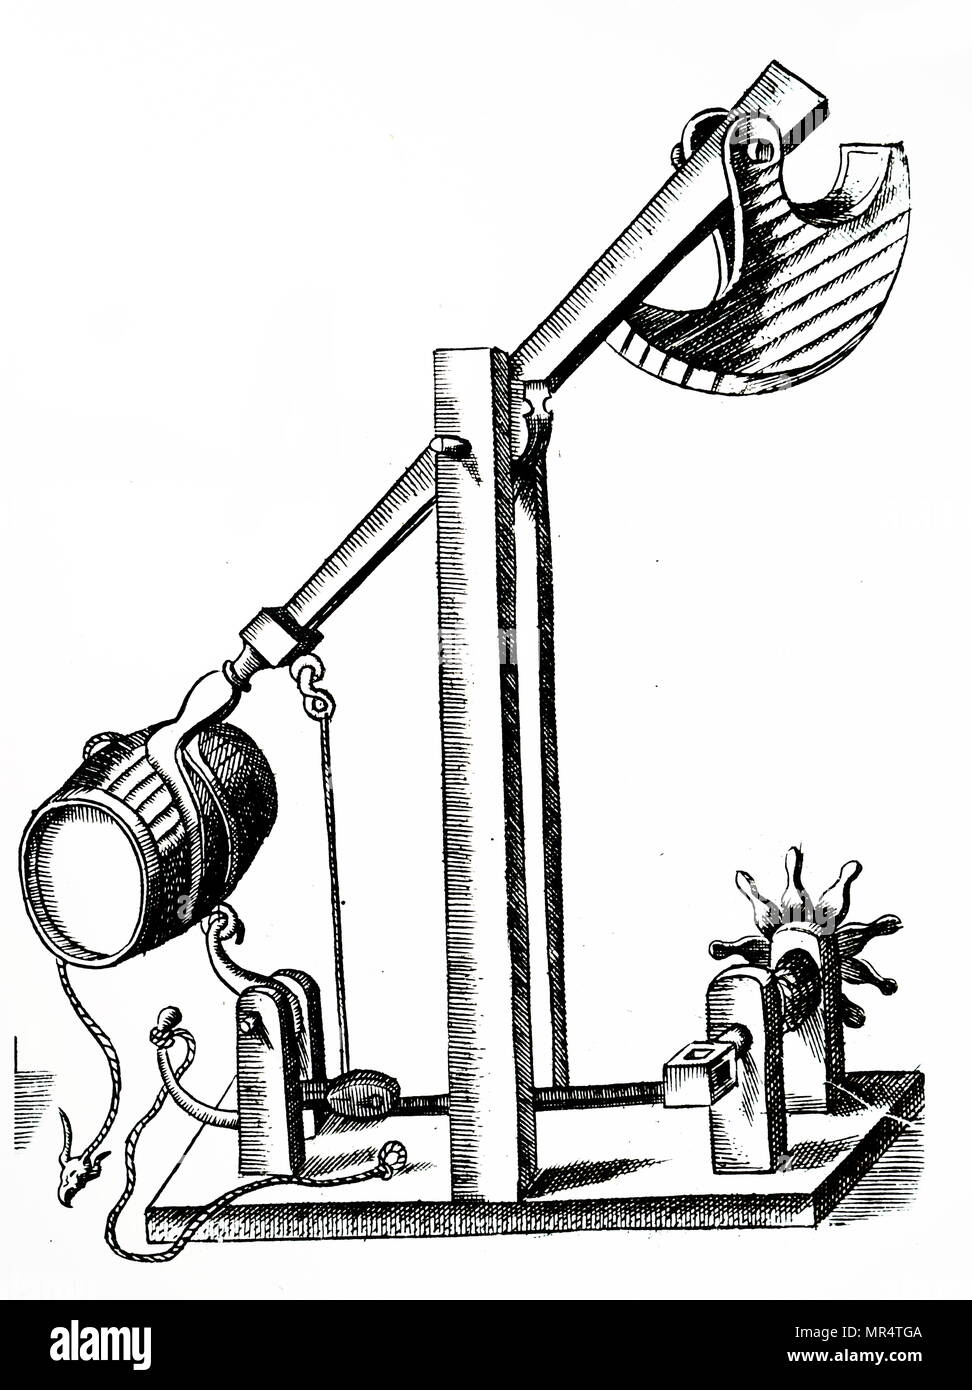 Kupferstich mit der Darstellung eines mechanischen Katapult bis Wunde durch eine Winde (rechts). Wenn das Seil wurde freigegeben, das Gewicht (oben rechts) zog den Arm schnell nach unten, die Projektion der Zylindertrommel (vielleicht mit Griechischem Feuer) auf den Feind. Vom 17. Jahrhundert Stockfoto